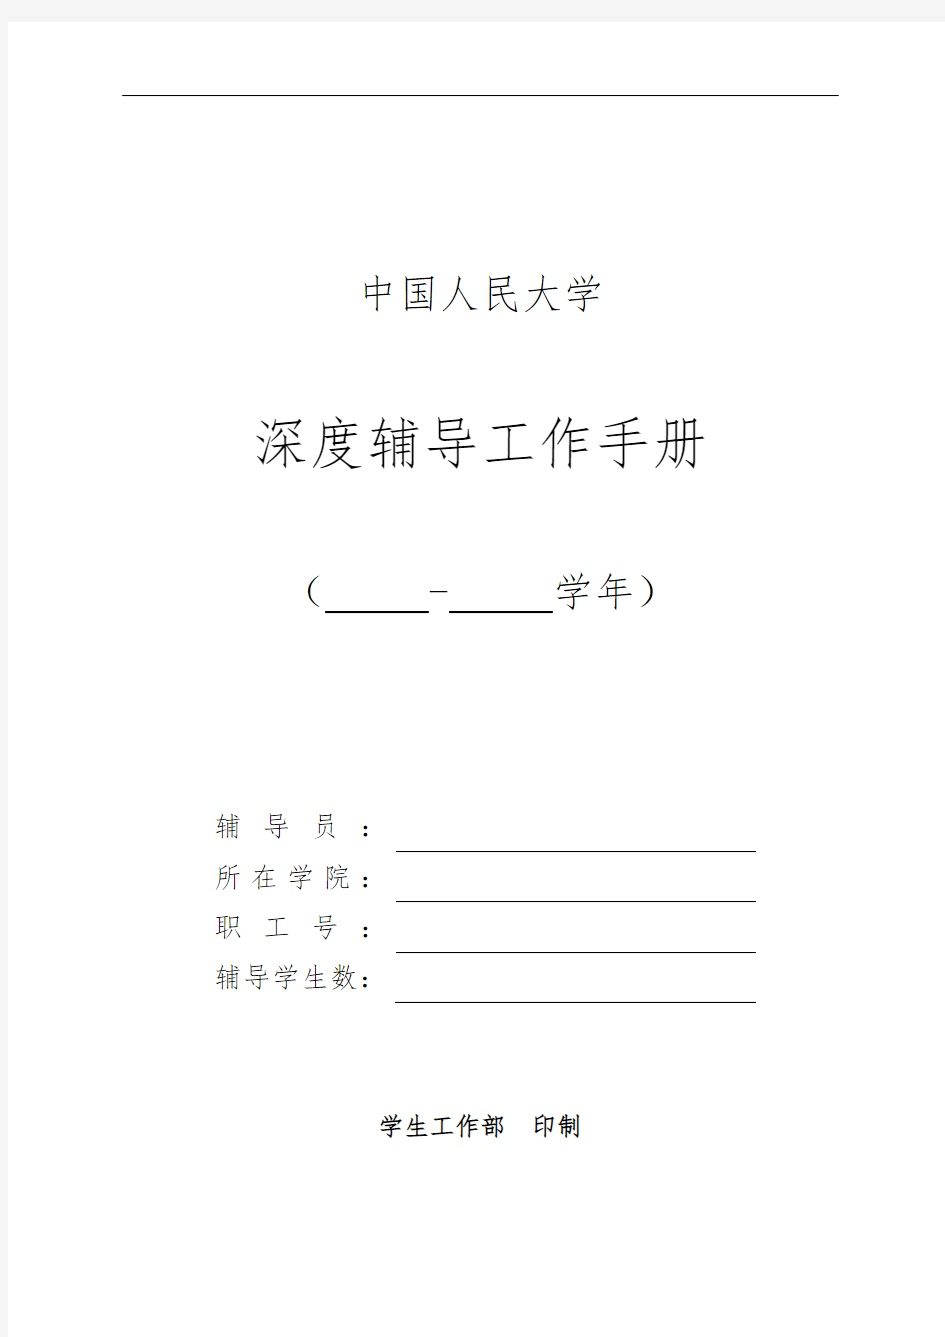 中国人民大学辅导员工作手册范本